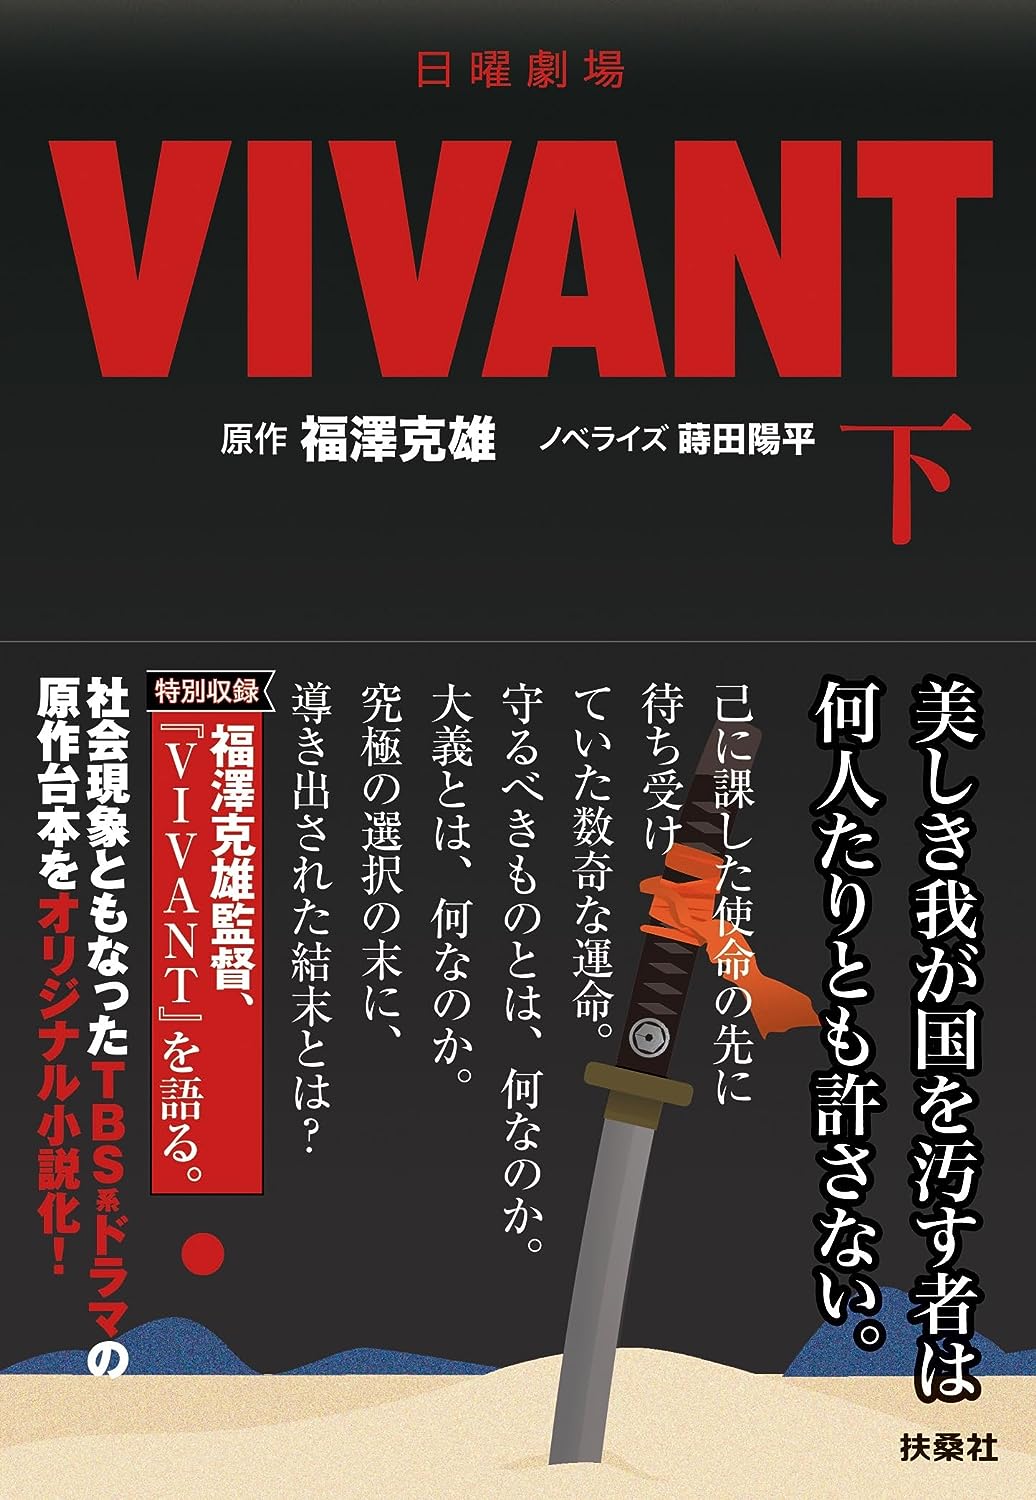 『VIVANT』小説版の心理描写